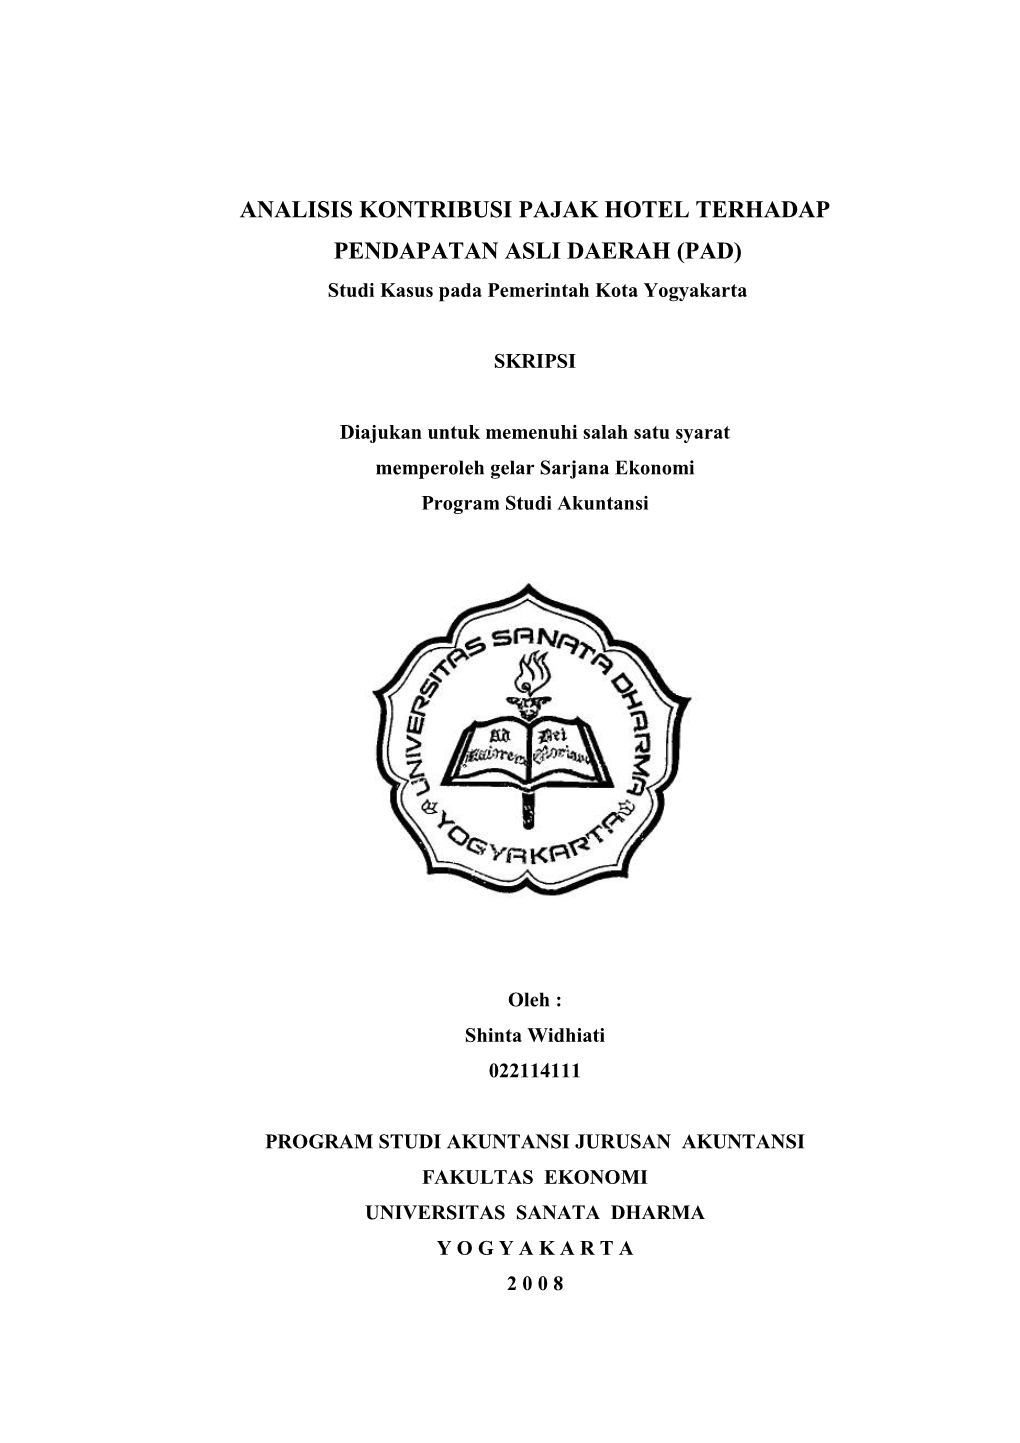 ANALISIS KONTRIBUSI PAJAK HOTEL TERHADAP PENDAPATAN ASLI DAERAH (PAD) Studi Kasus Pada Pemerintah Kota Yogyakarta